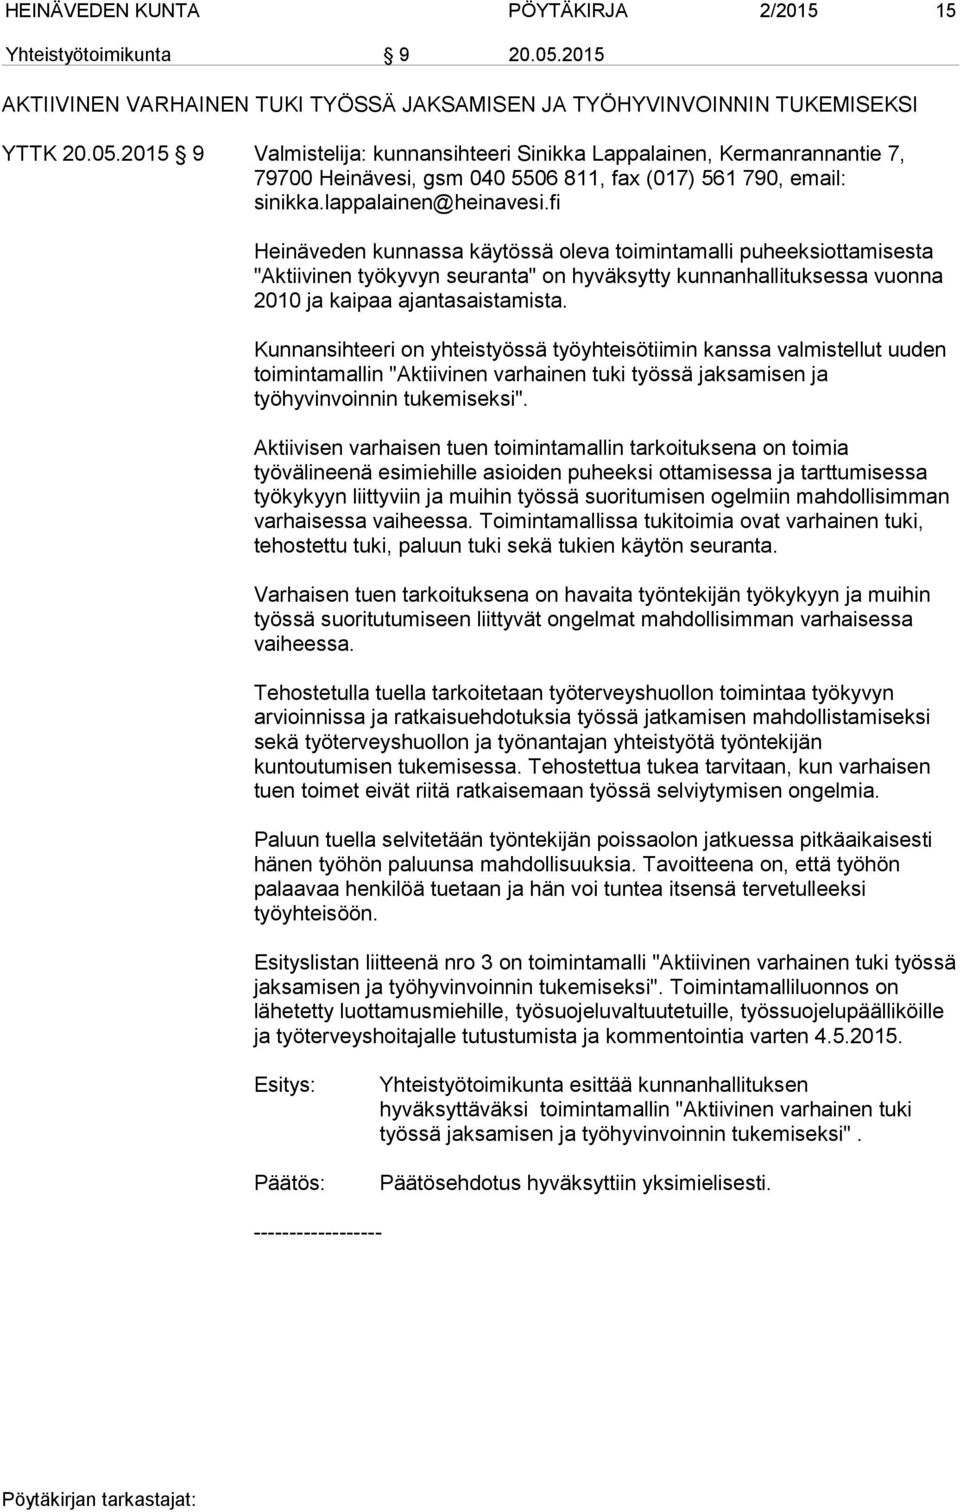 2015 9 Valmistelija: kunnansihteeri Sinikka Lappalainen, Kermanrannantie 7, 79700 Heinävesi, gsm 040 5506 811, fax (017) 561 790, email: sinikka.lappalainen@heinavesi.